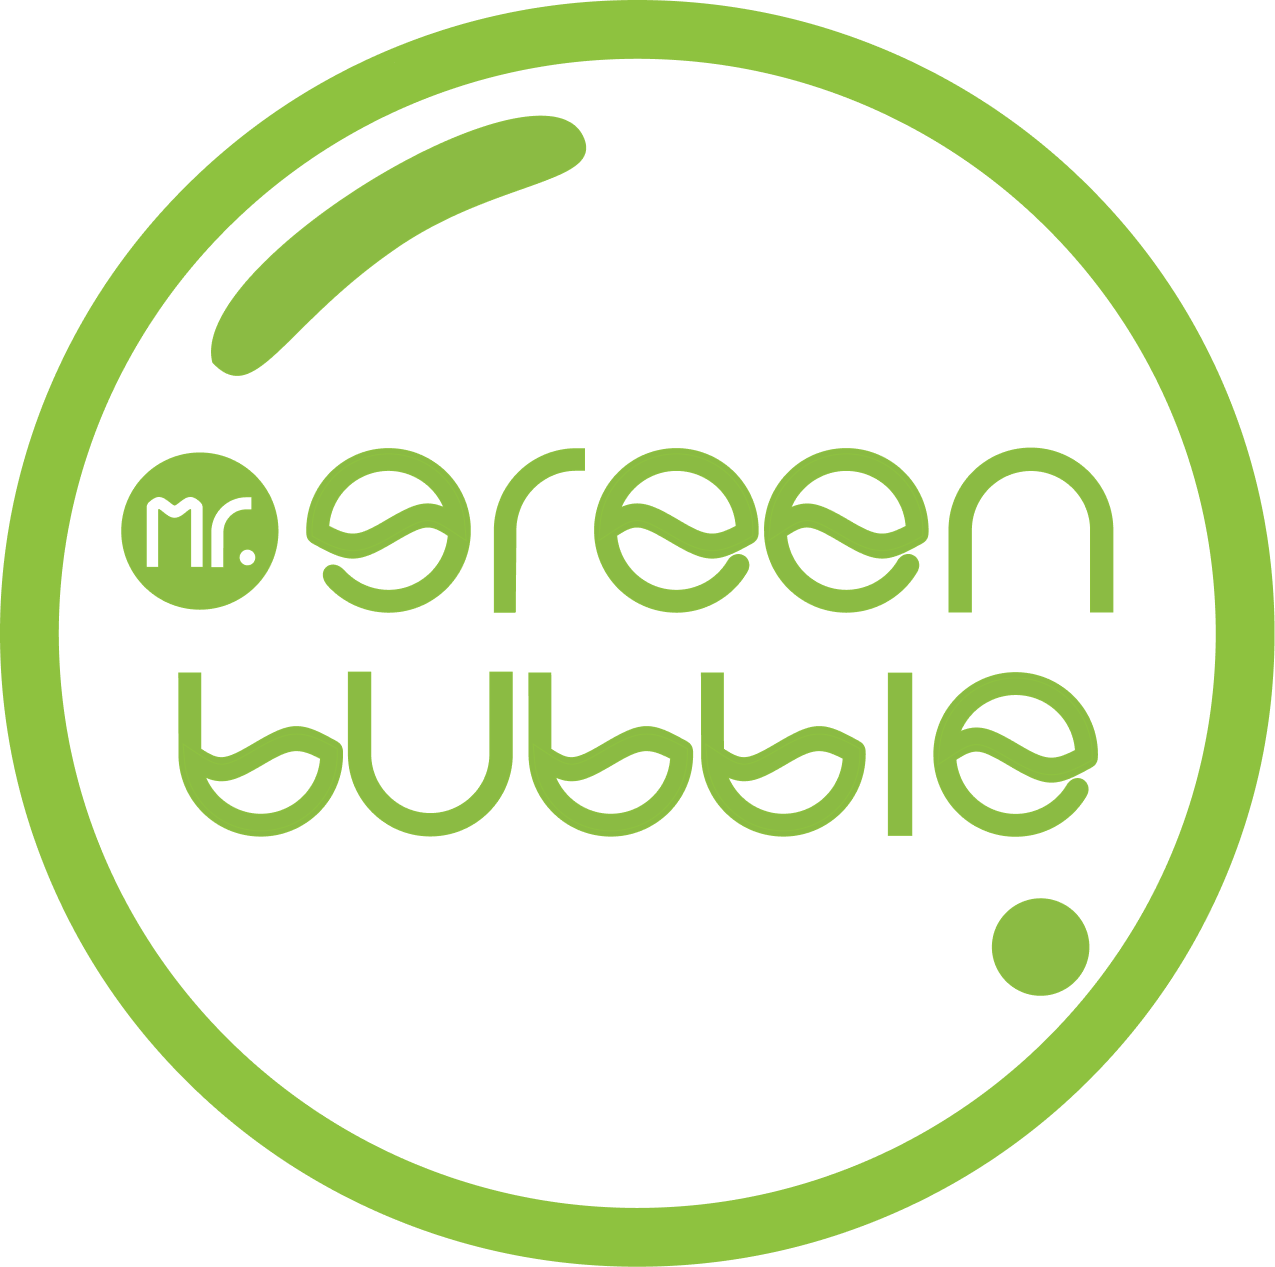 Mr. Green Bubble